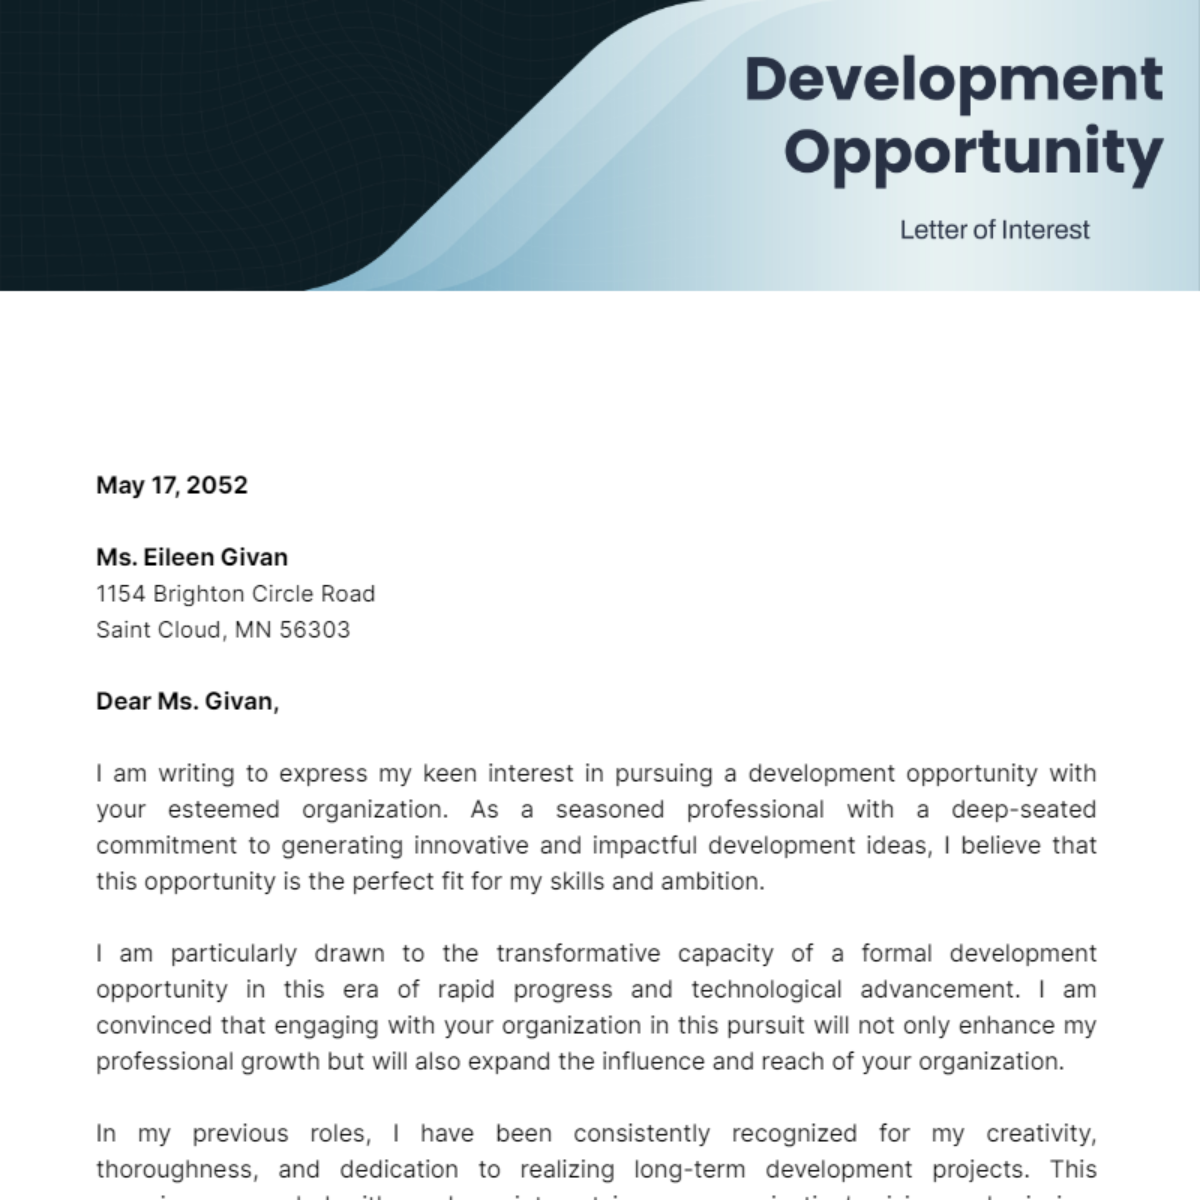 Development Opportunity Letter of Interest Template